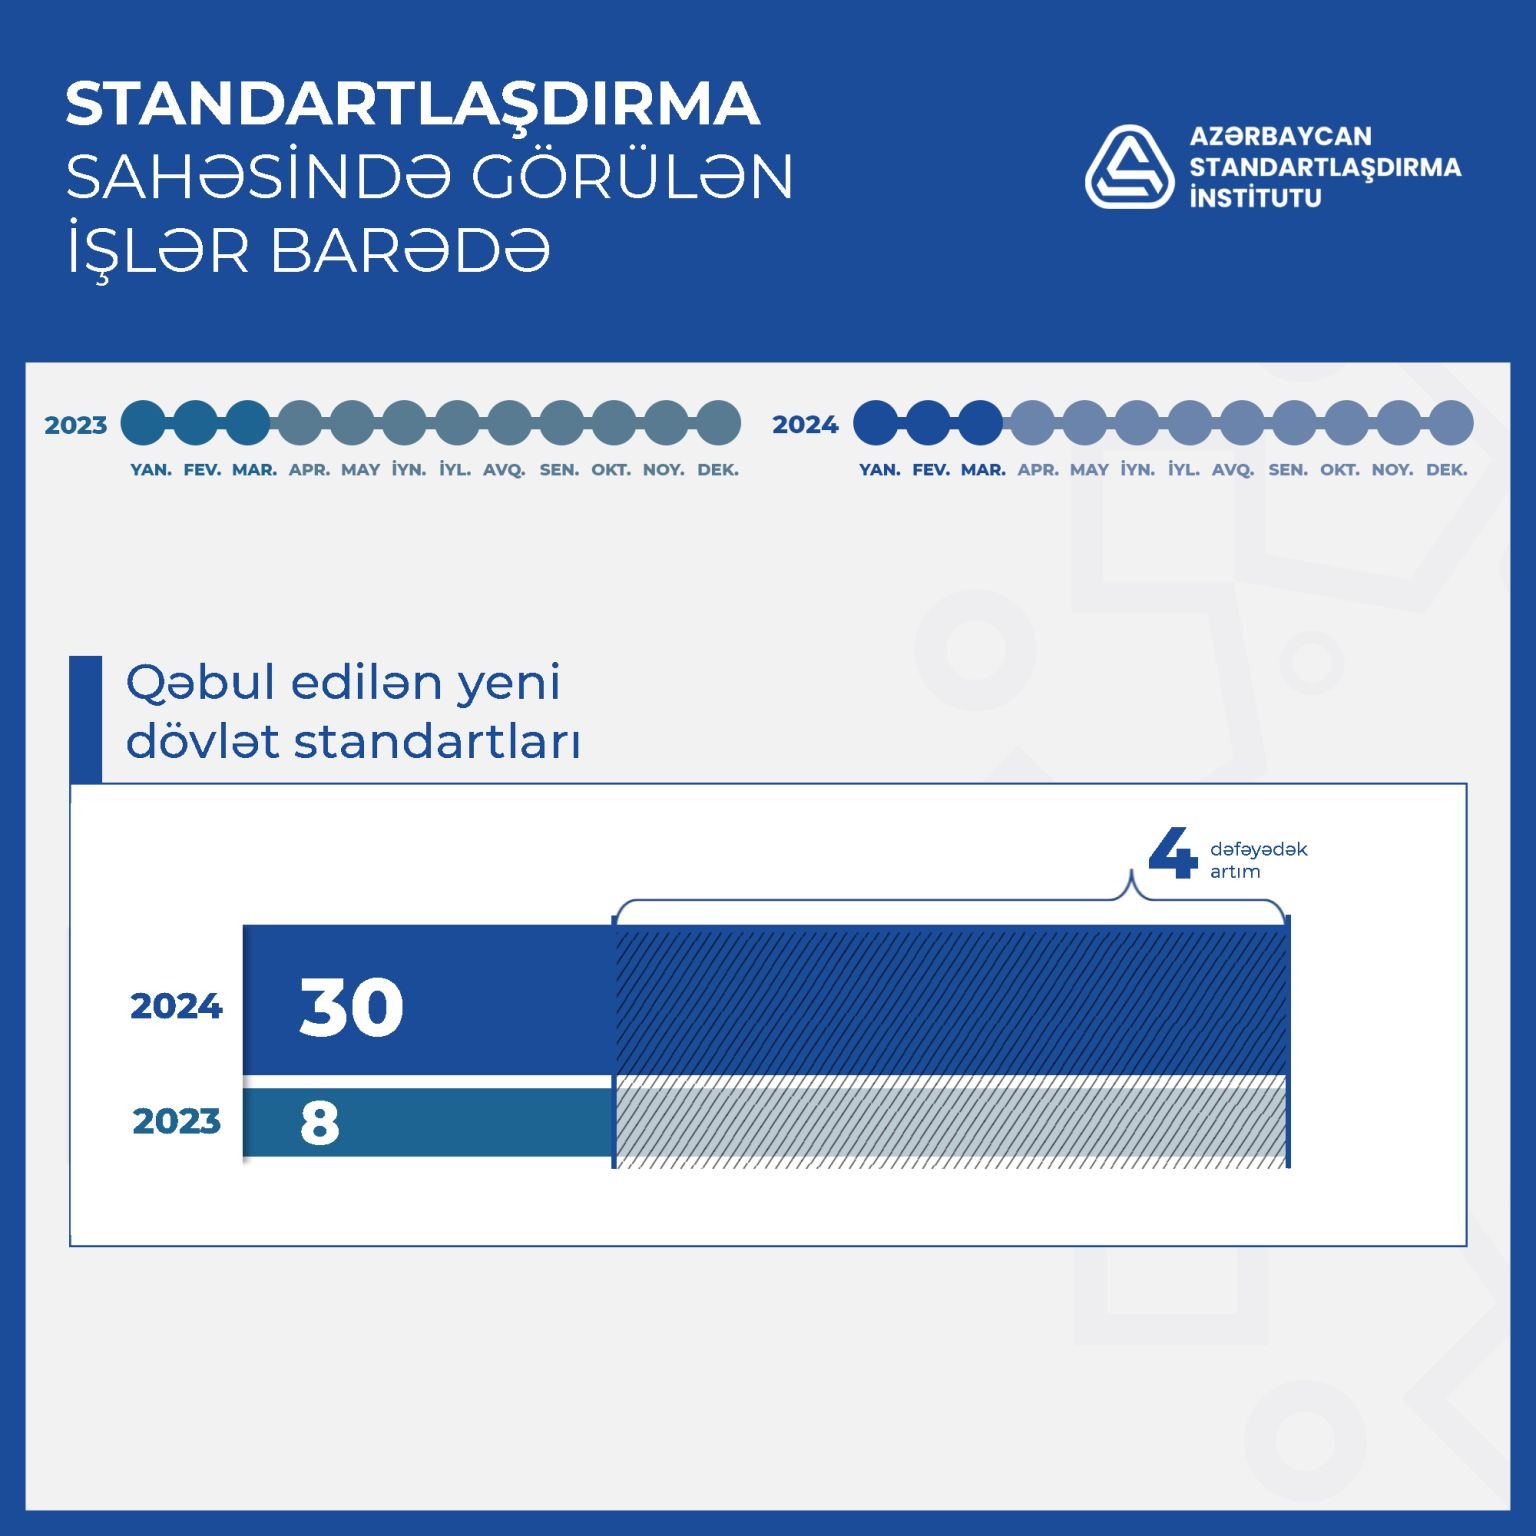 2024-cü ilin 3 ayı ərzində milli standartlaşdırma qurumu tərəfindən standartlaşdırma sahəsində görülən işlər